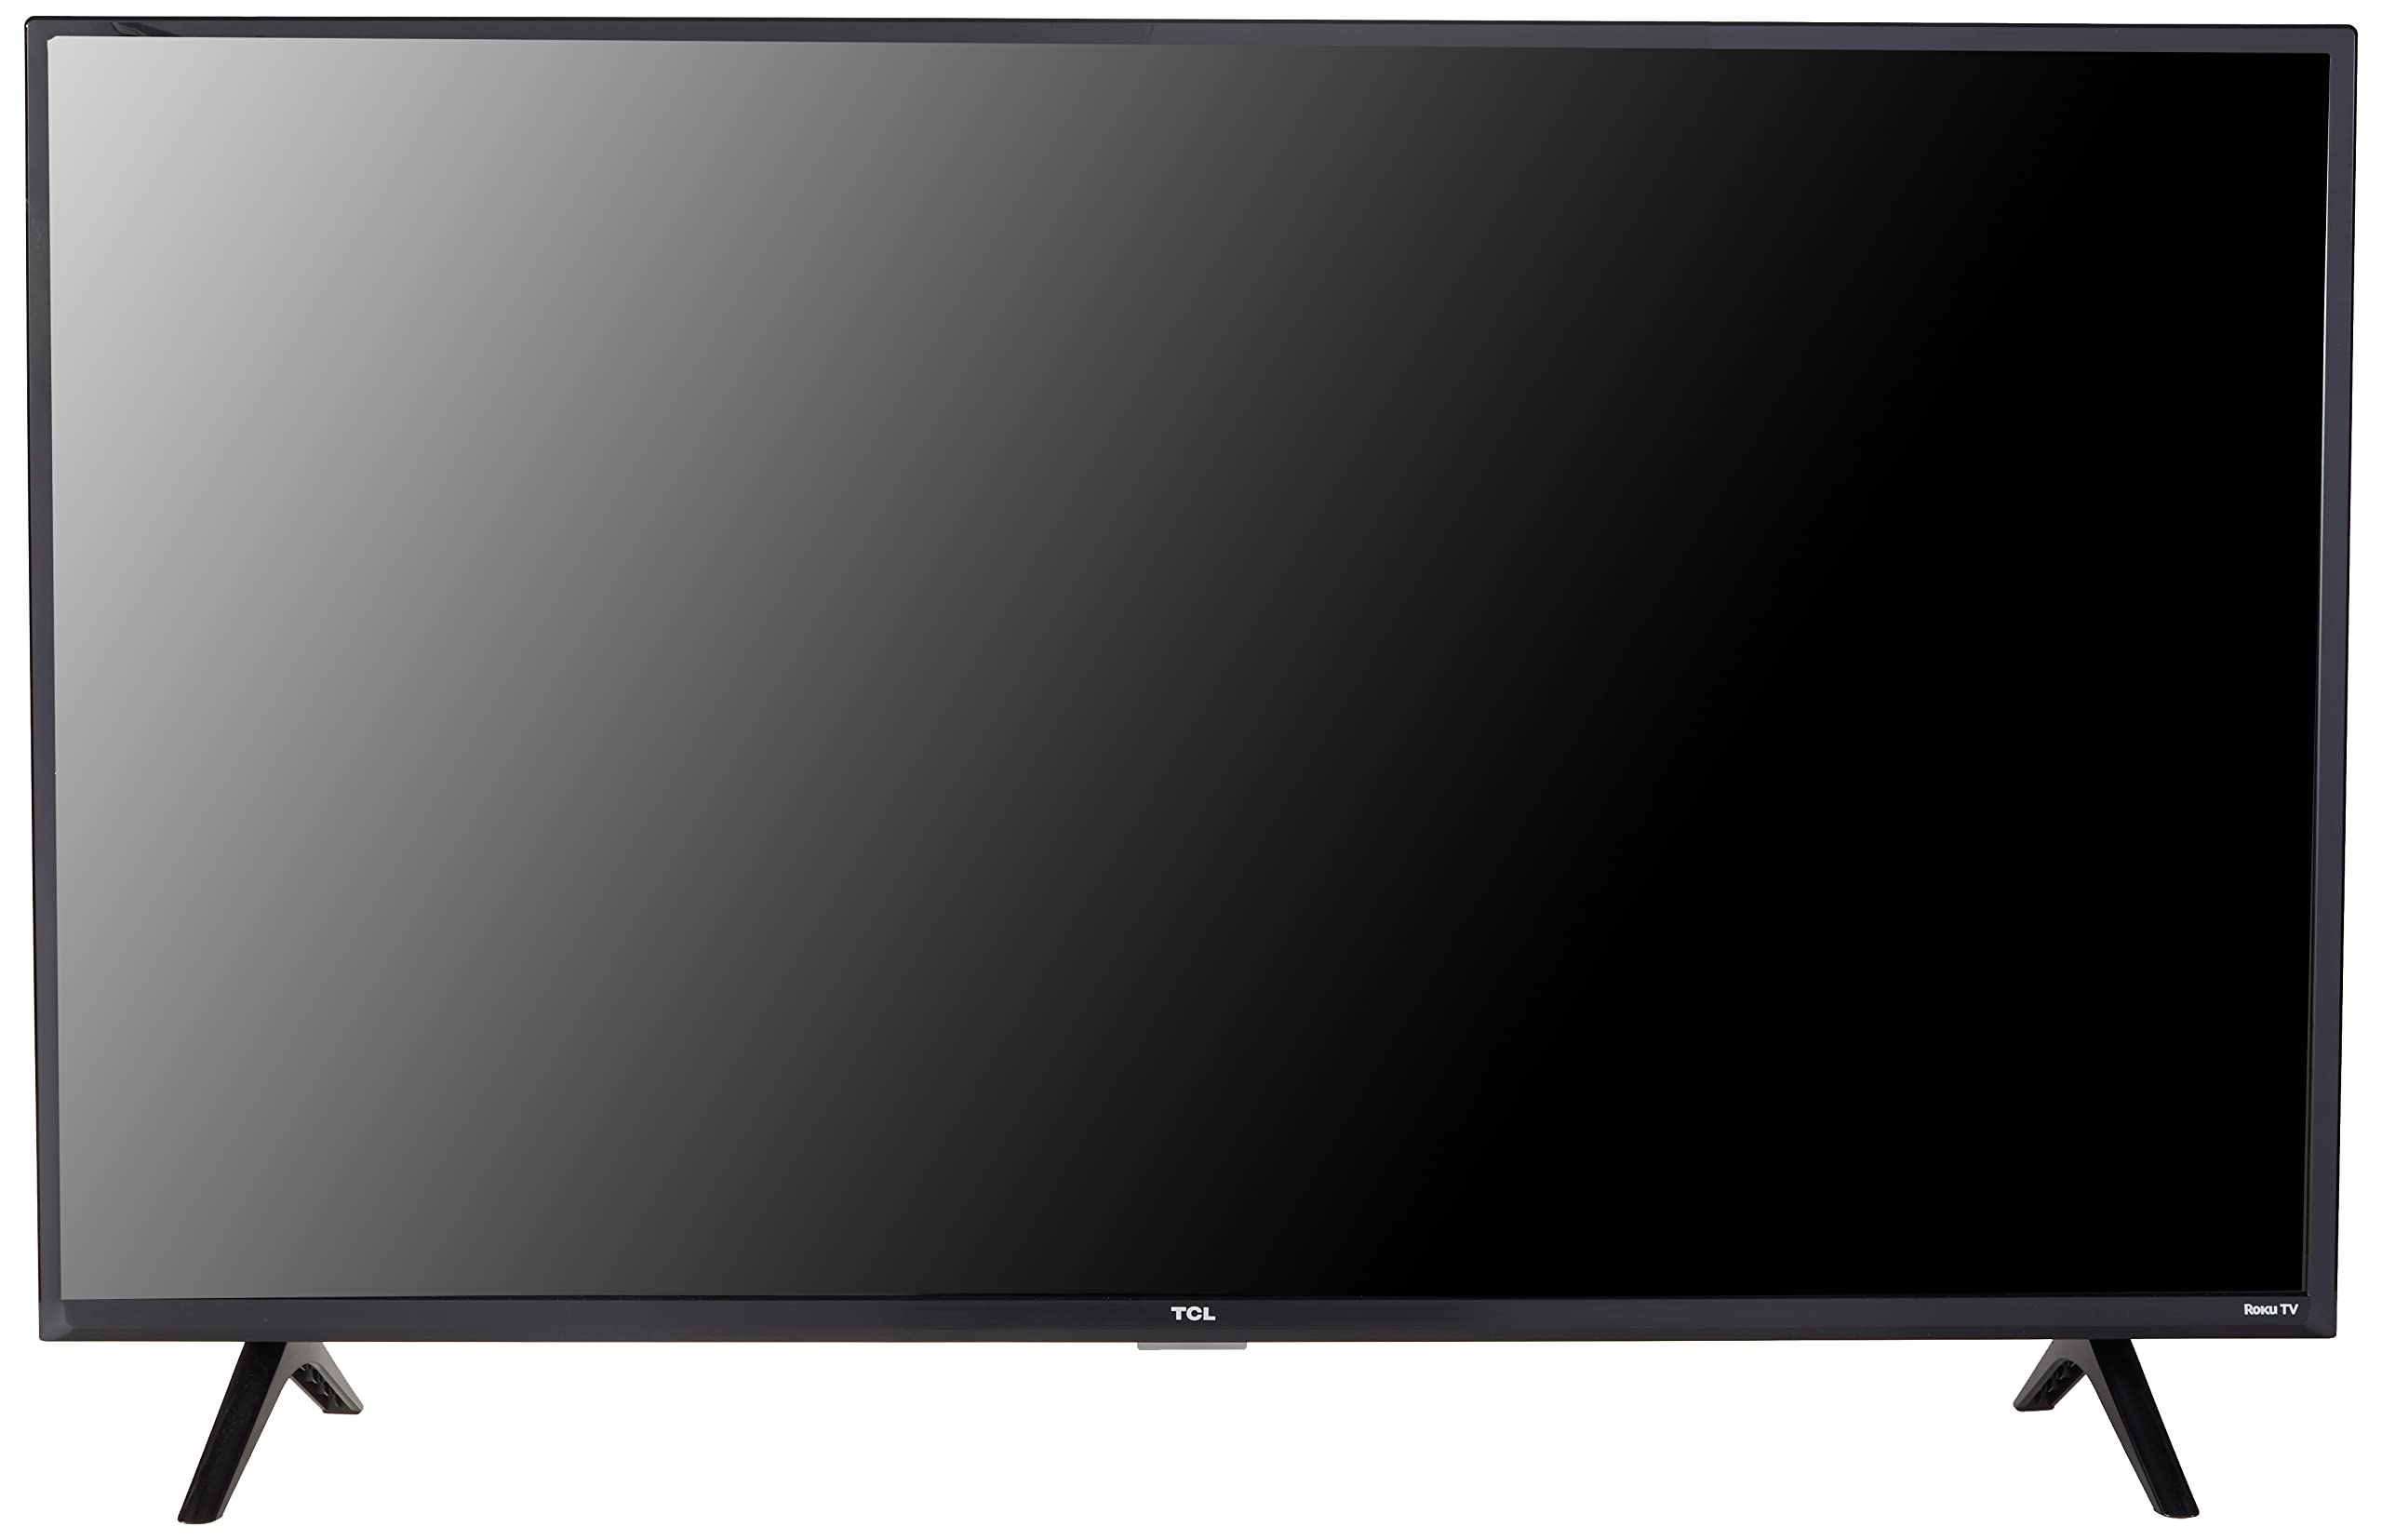 TCL 40-дюймовый смарт-телевизор Roku со светодиодной подсветкой Full HD 1080p класса 3 — 40S355